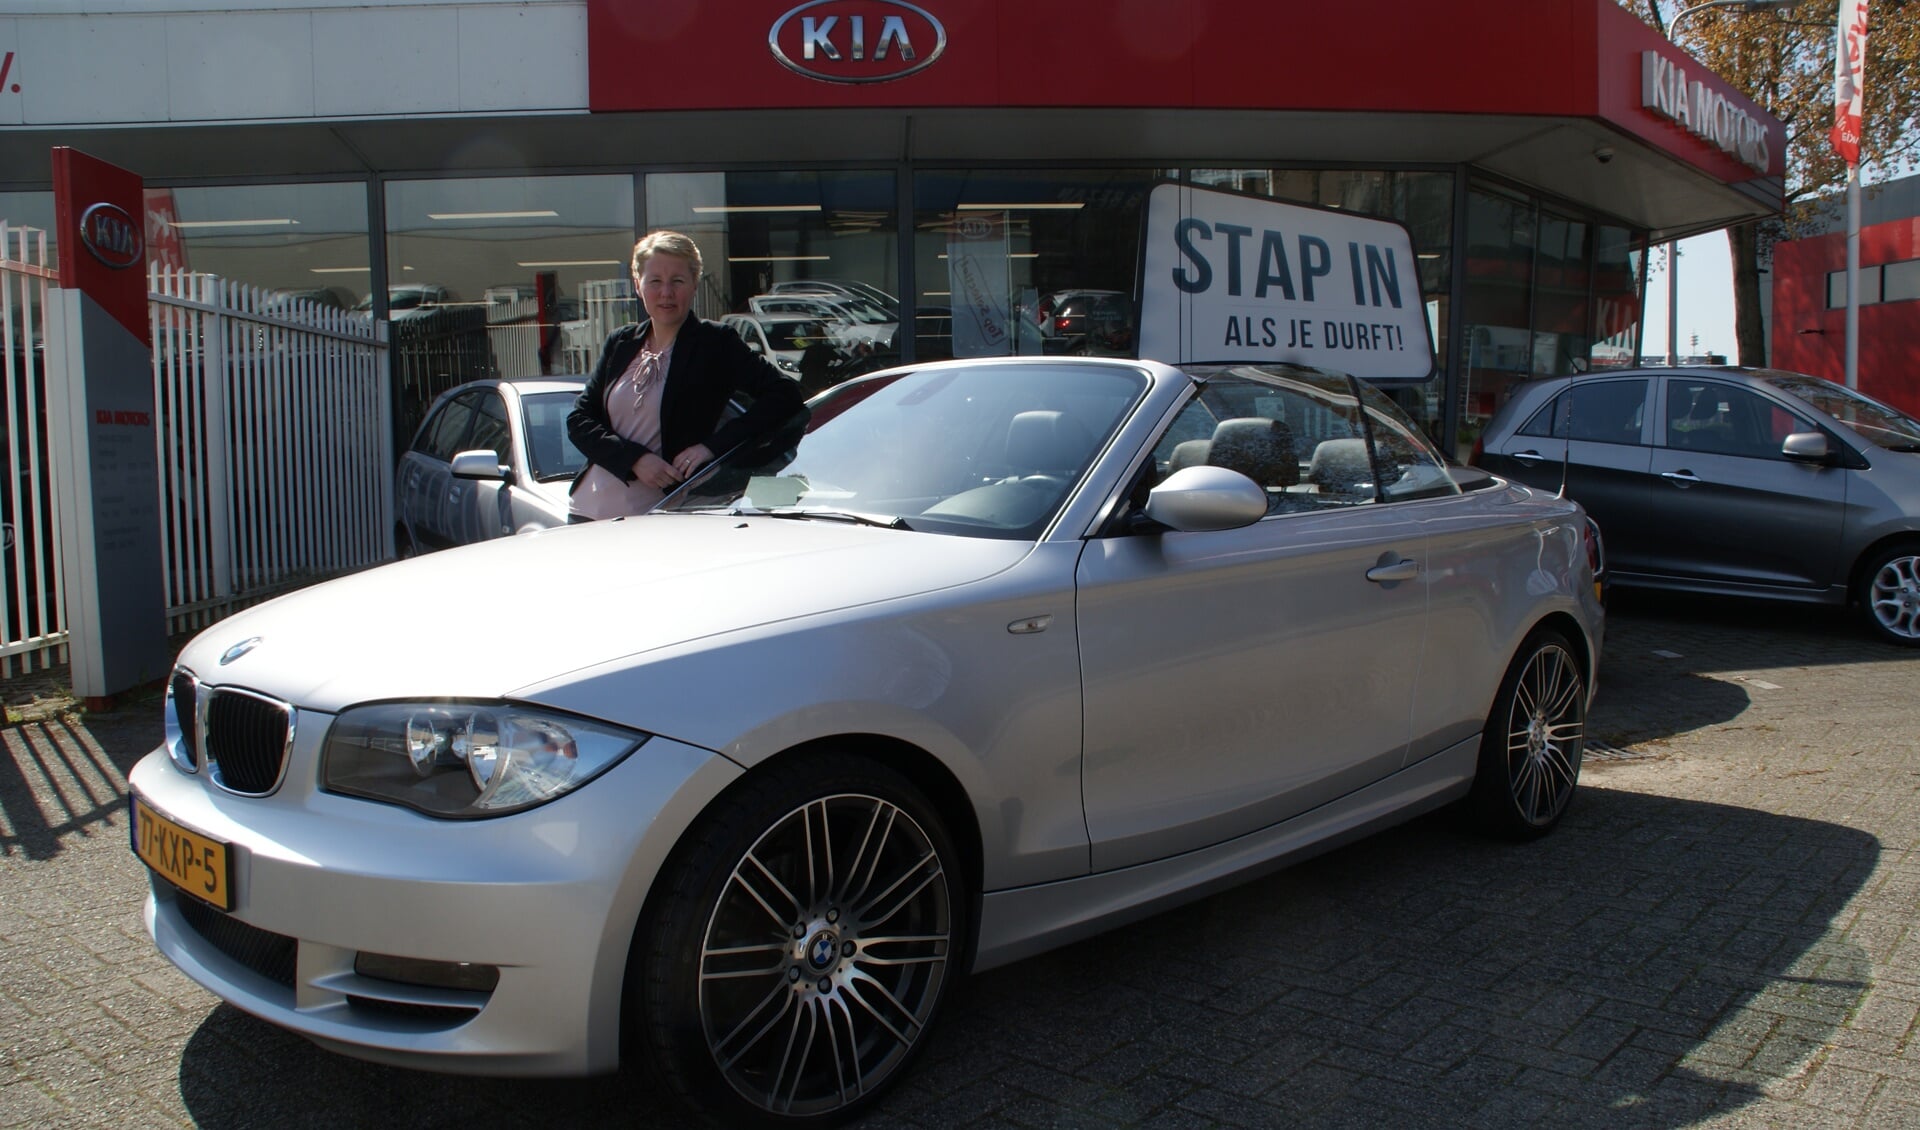 Verkoopadviseur Wendy van Wijngaarden bij een opzienbarende BMW-occasion.